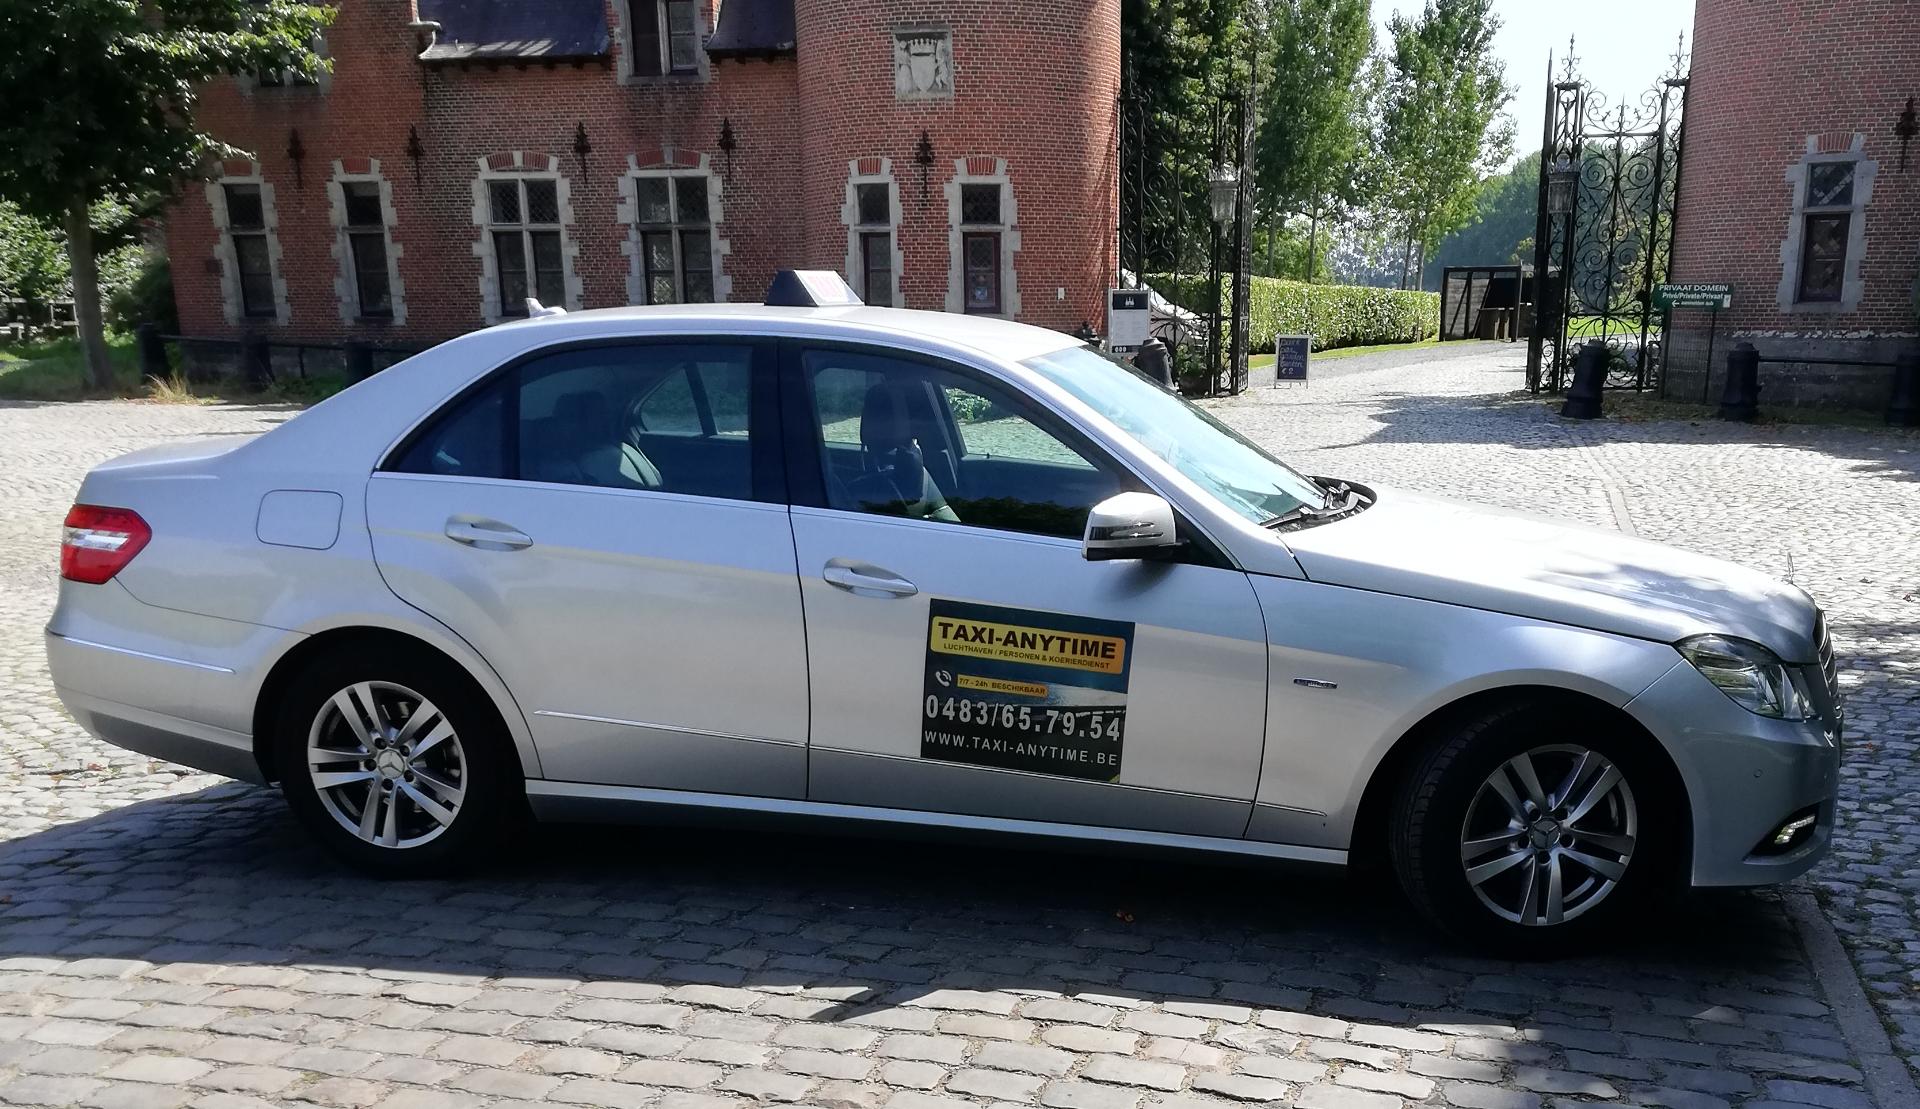 taxibedrijven met luchthavenvervoer Uitkerke Taxi Anytime